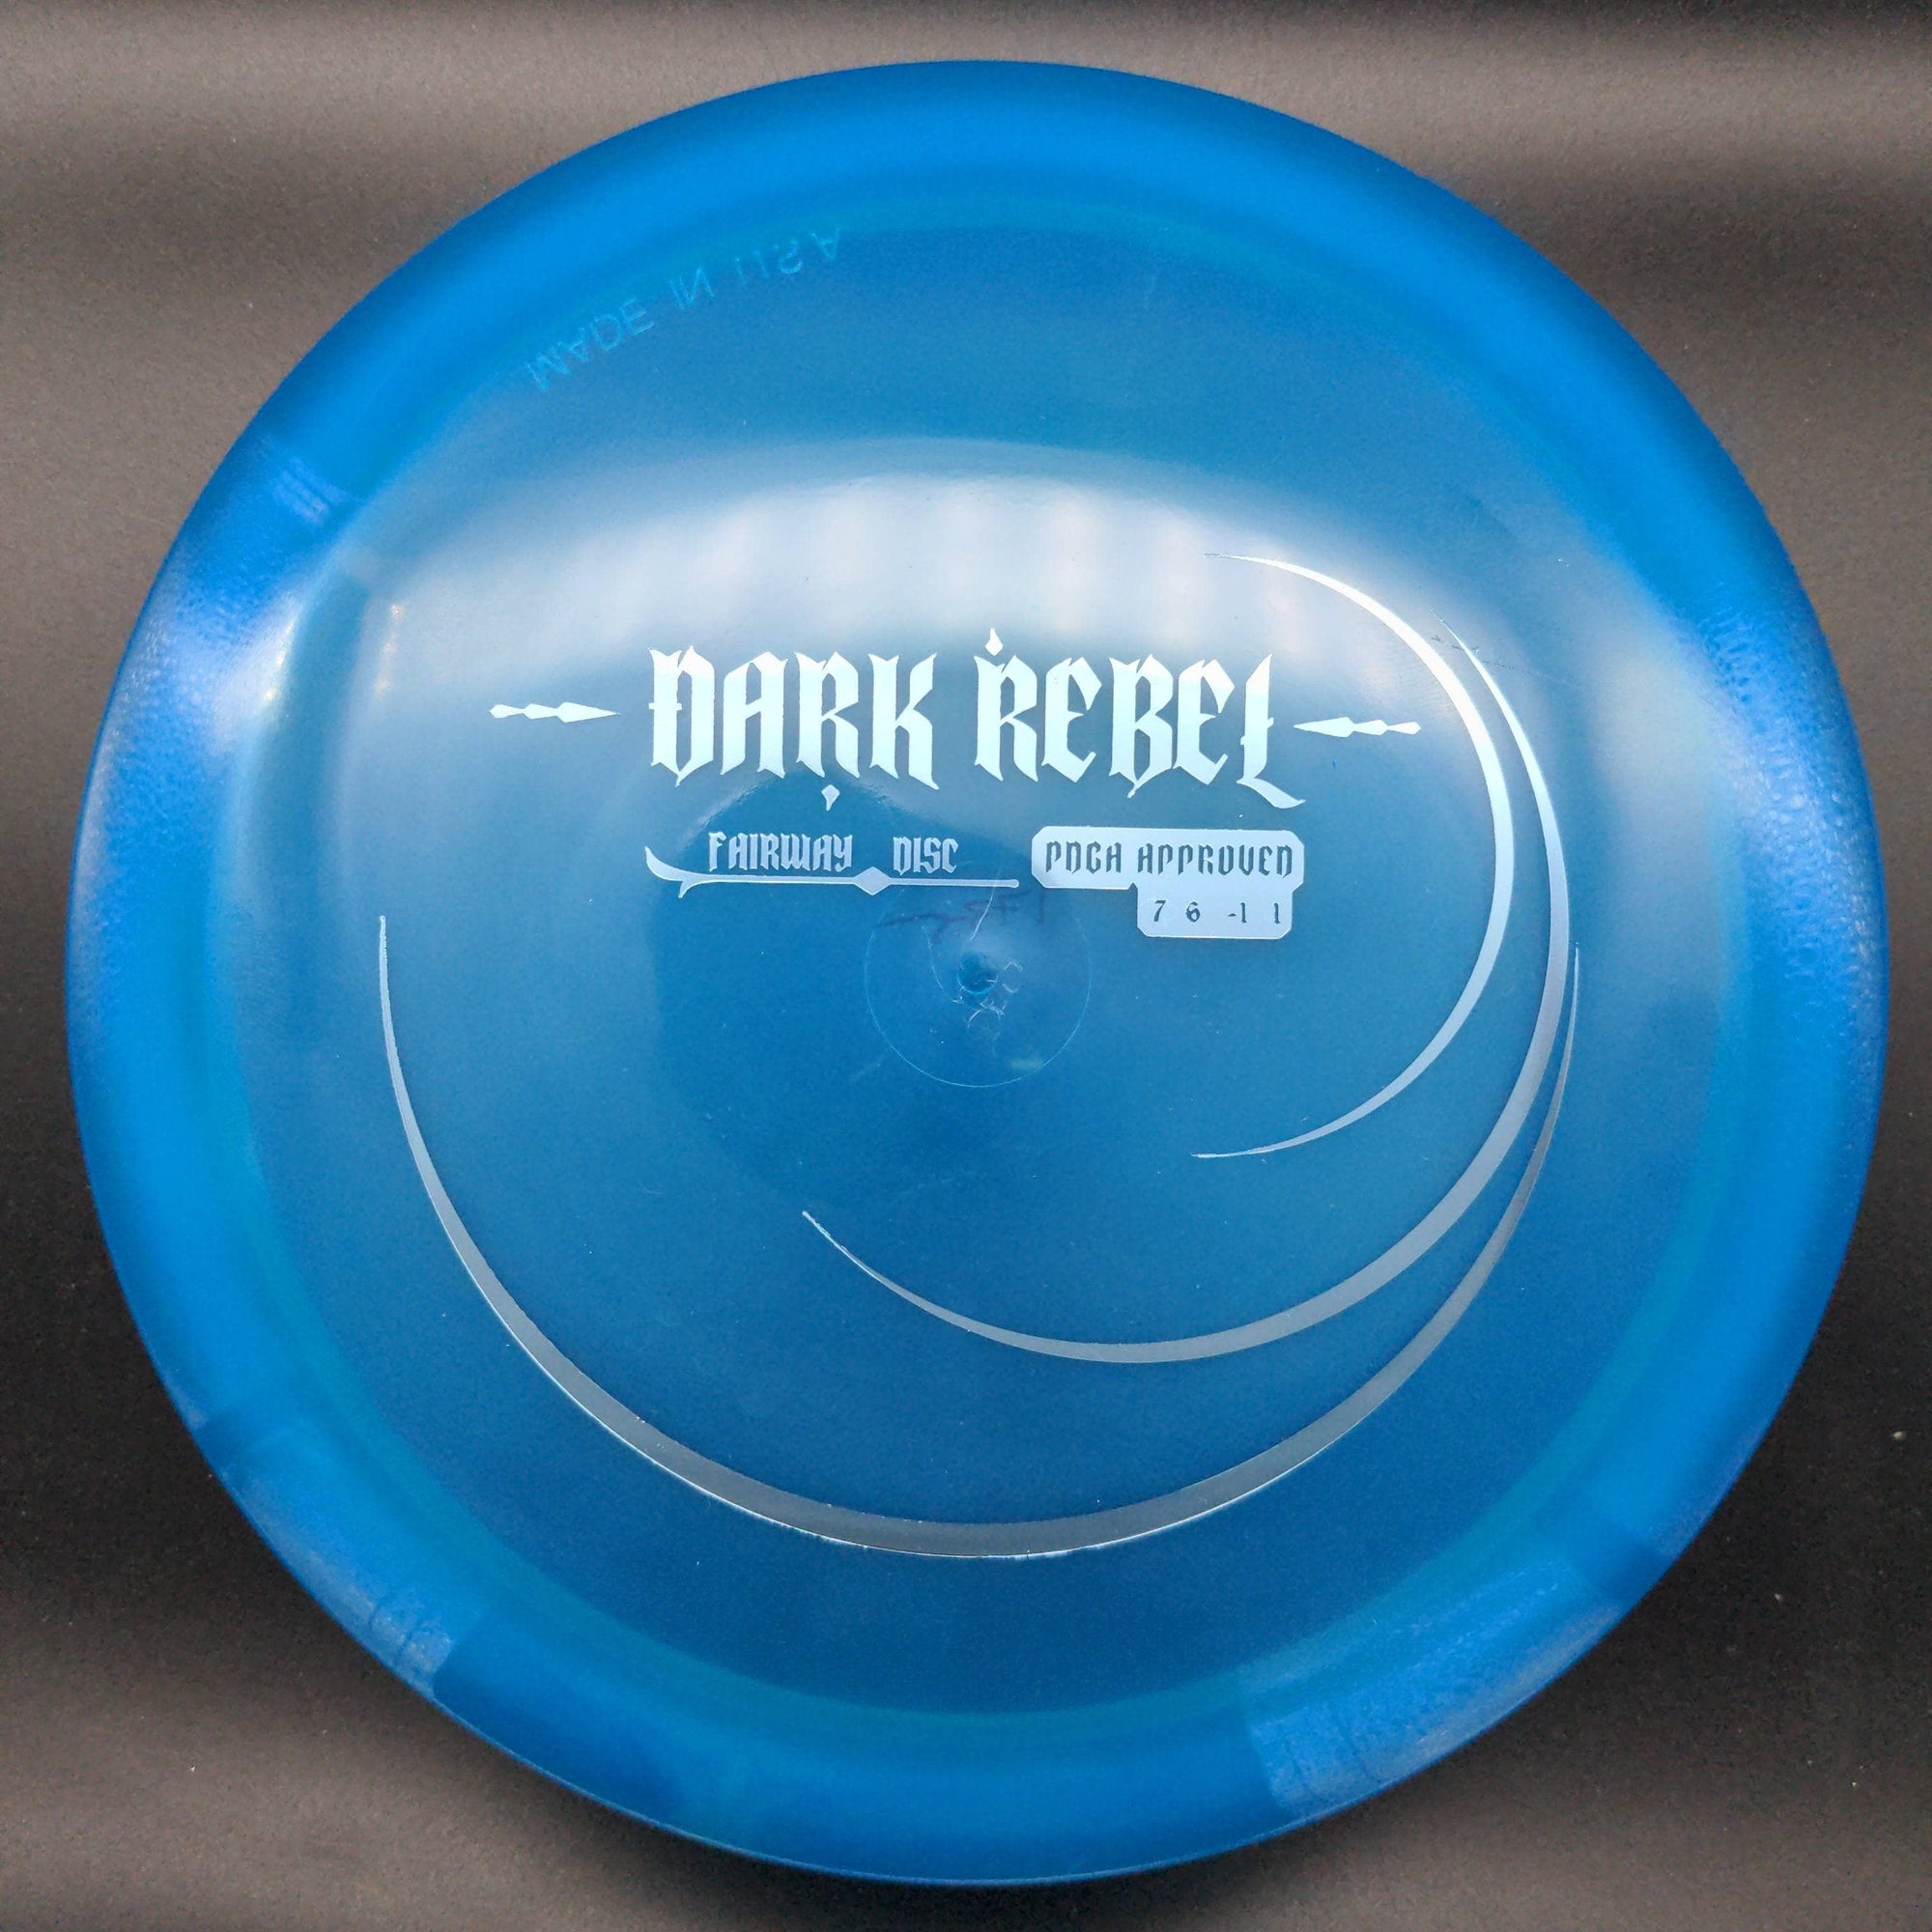 Innova Fairway Driver Fairway Disc (Dark Rebel), Champion